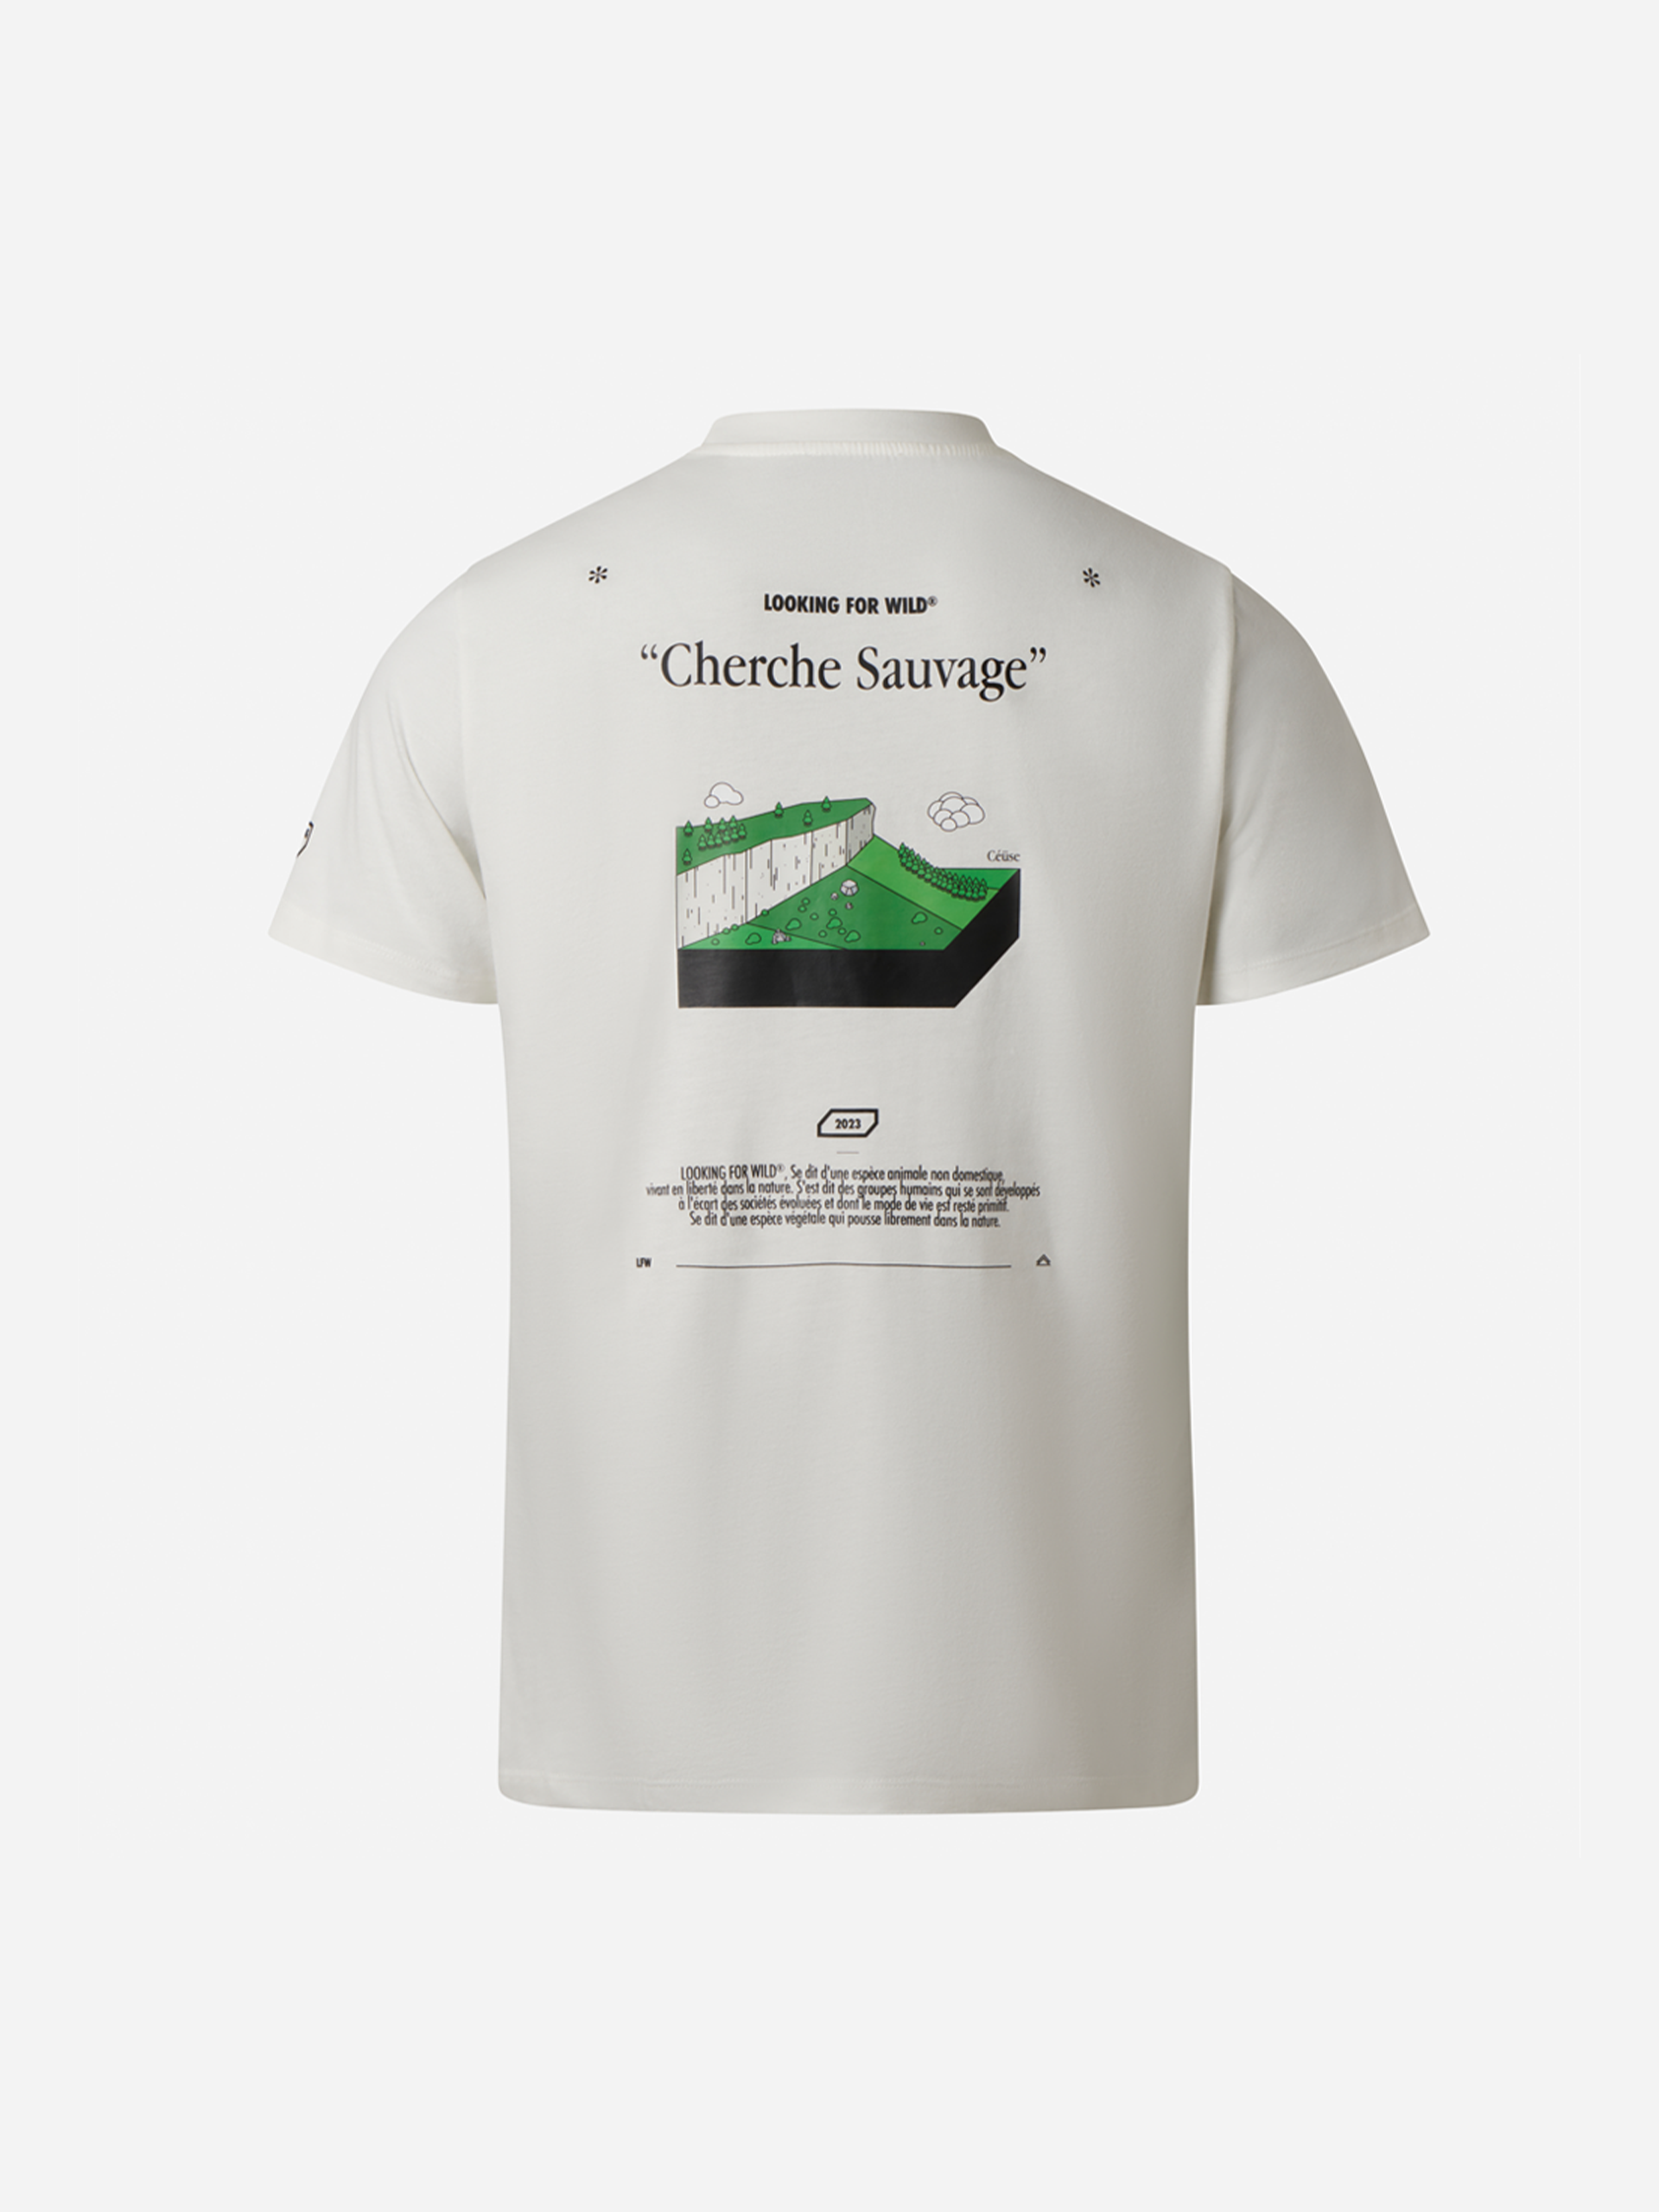 T-Shirt Cherche Sauvage - Céüse (Édition limitée)